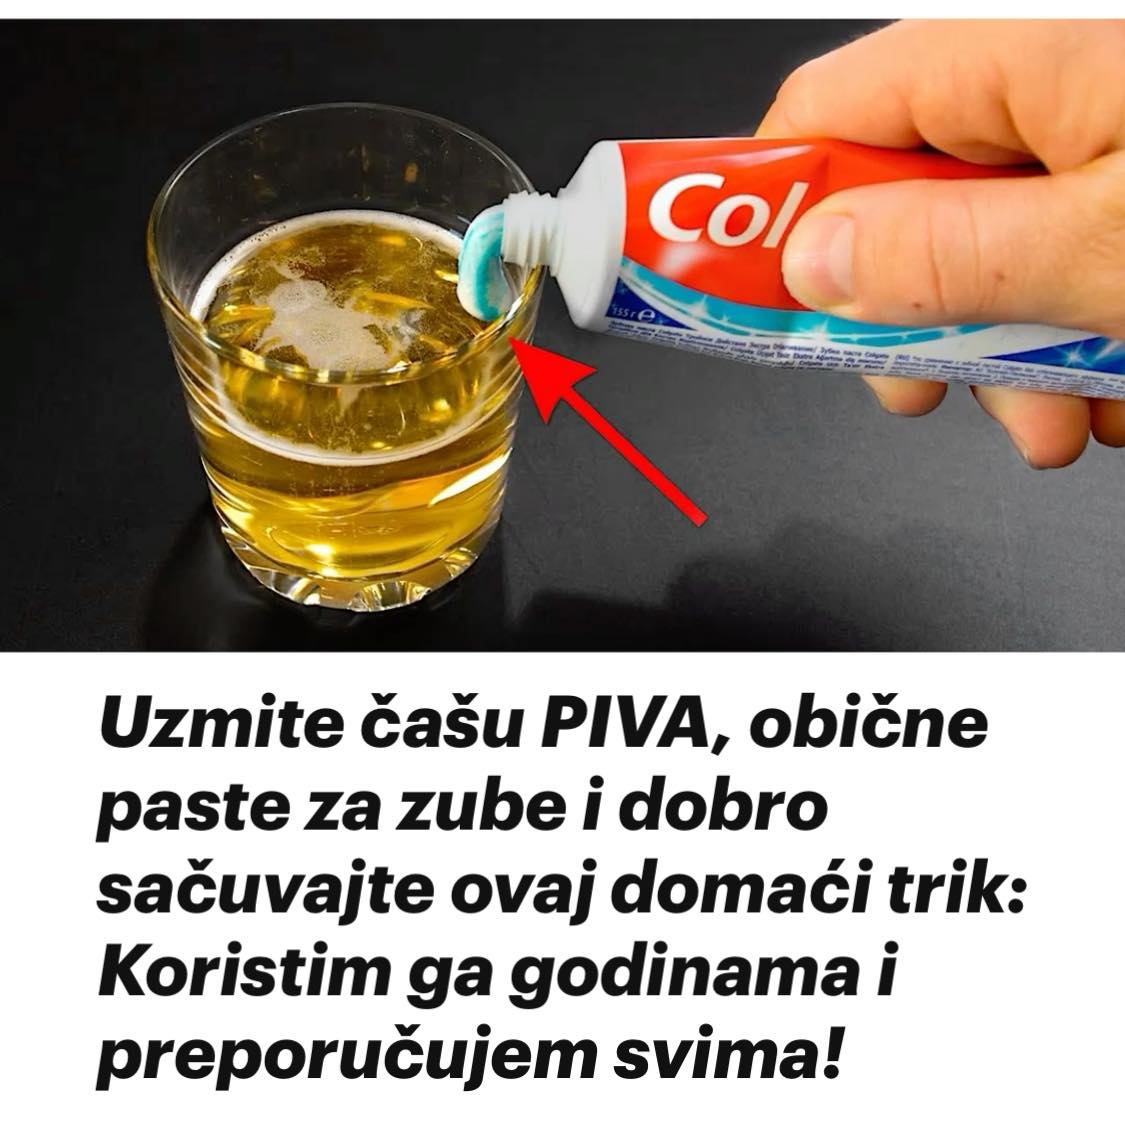 Uzmite čašu PIVA, obične paste za zube i dobro sačuvajte ovaj domaći trik: Koristim ga godinama i preporučujem svima!